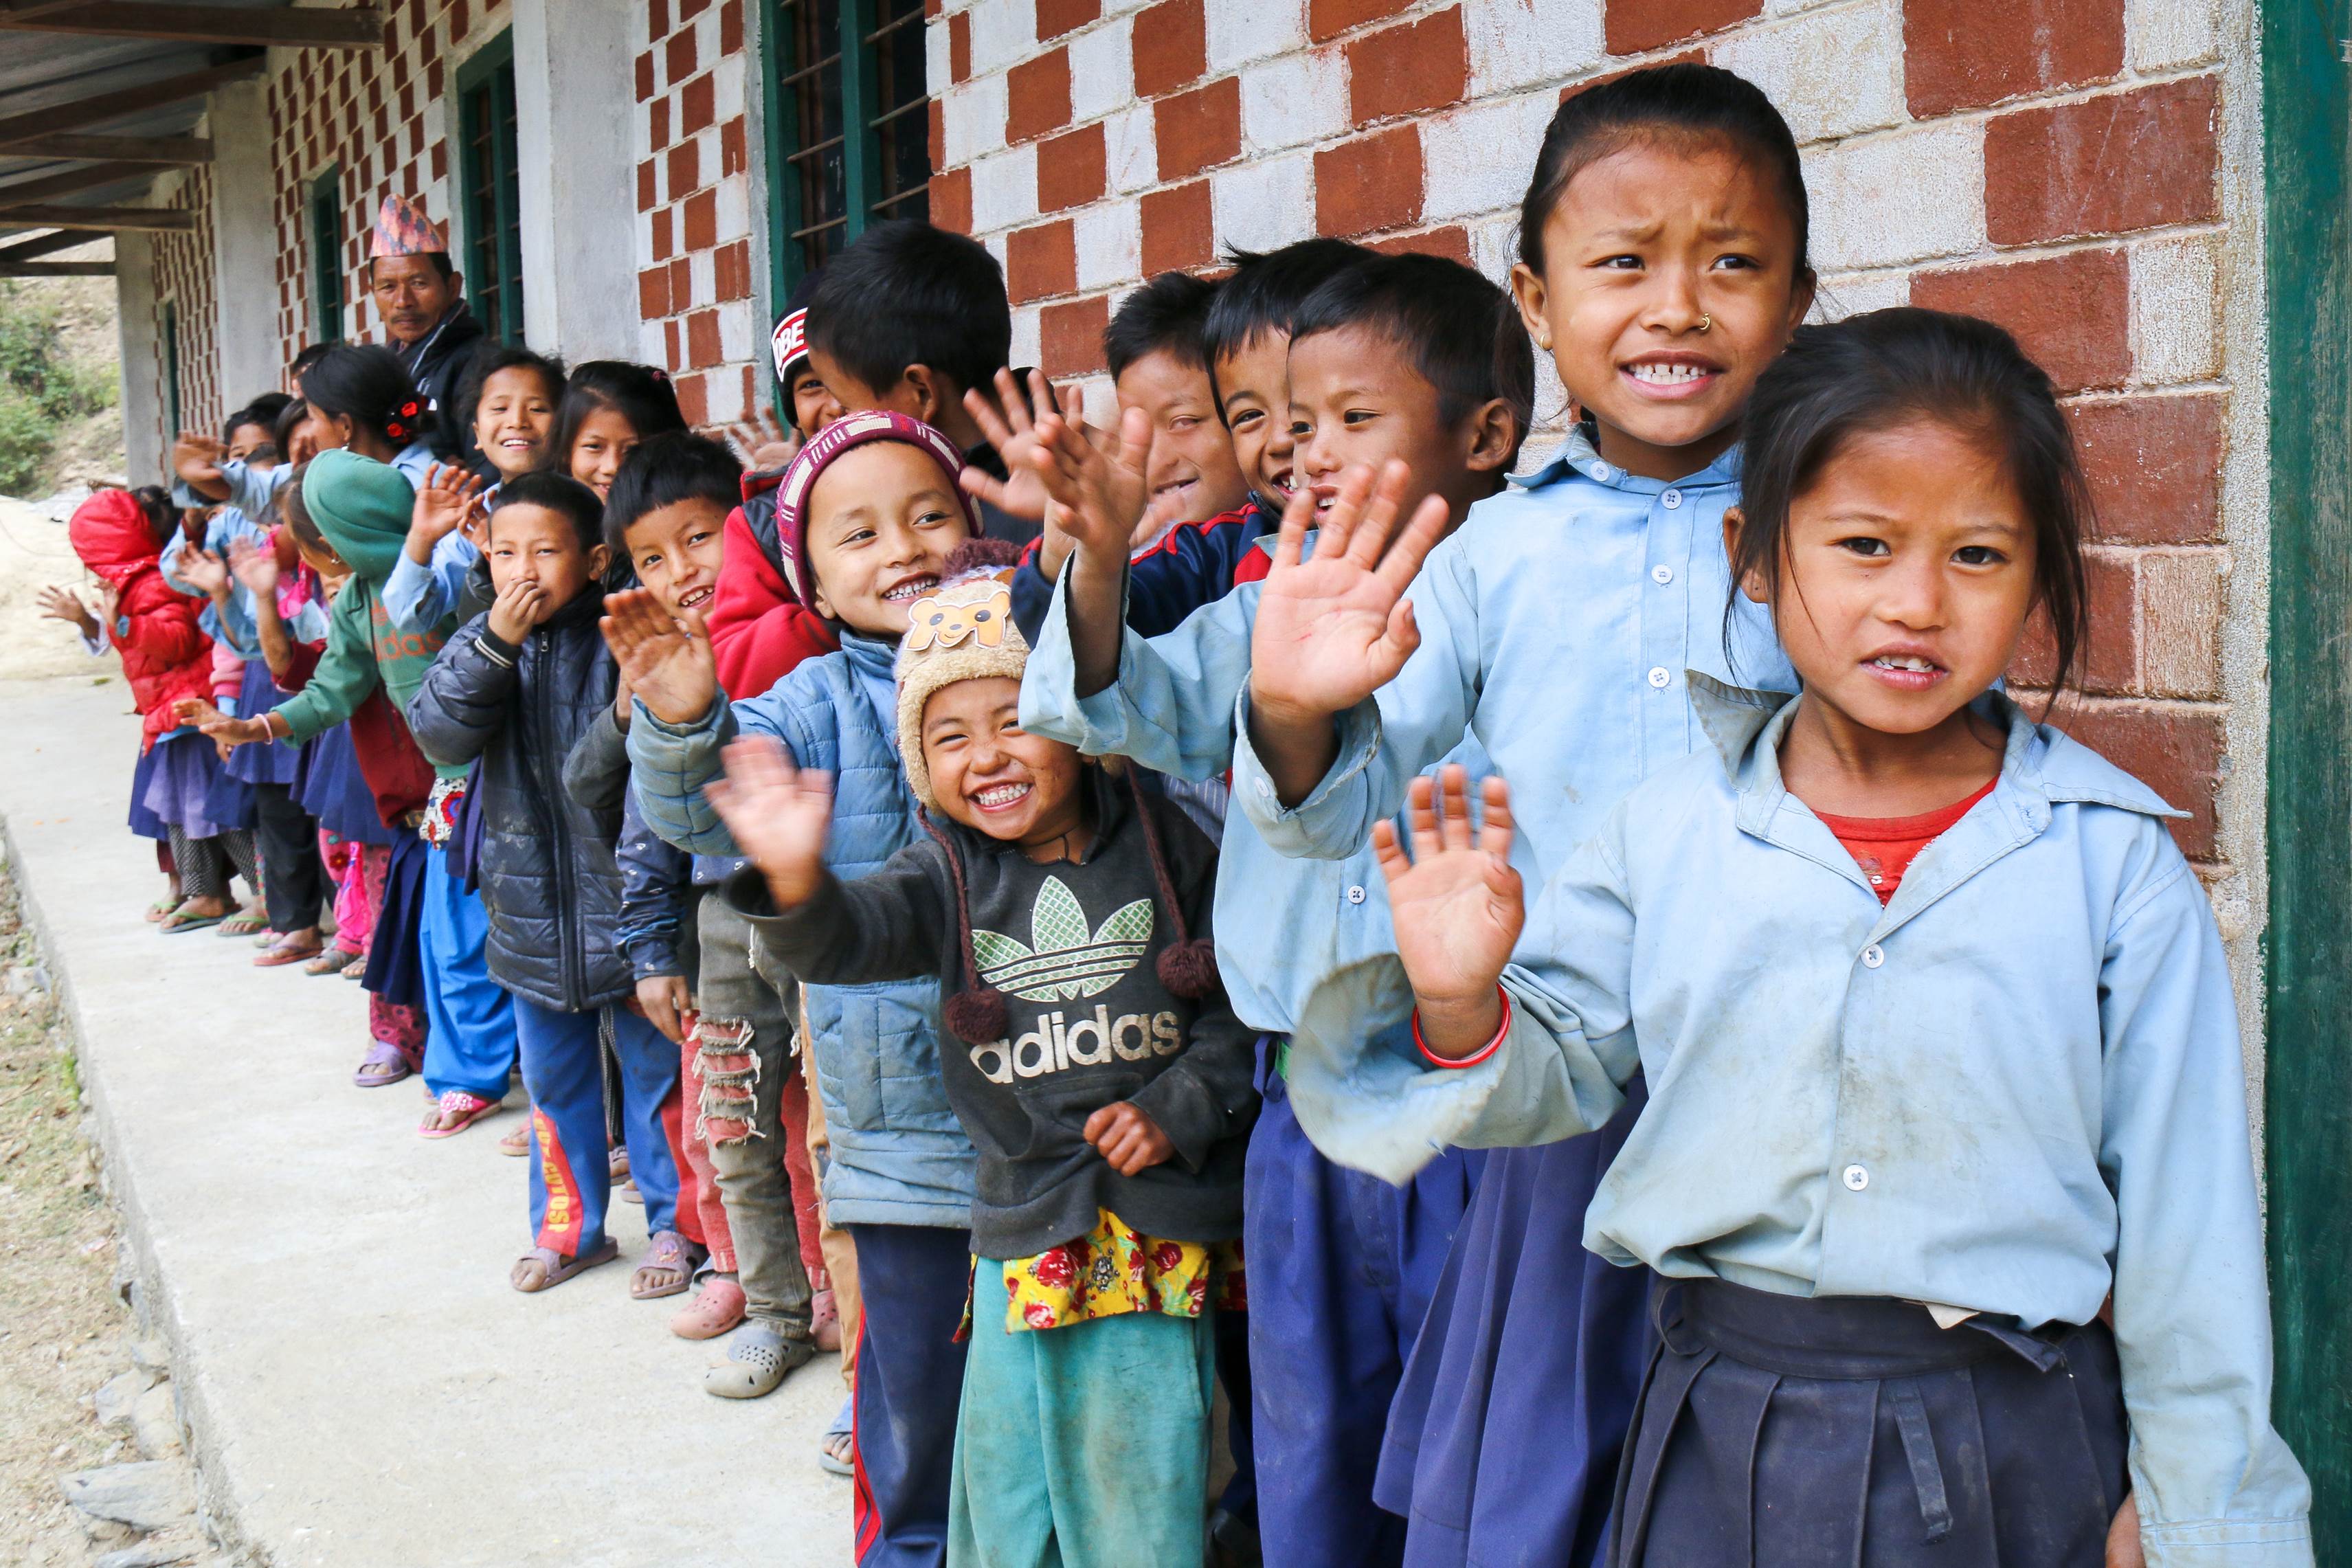 School kids in Nepal